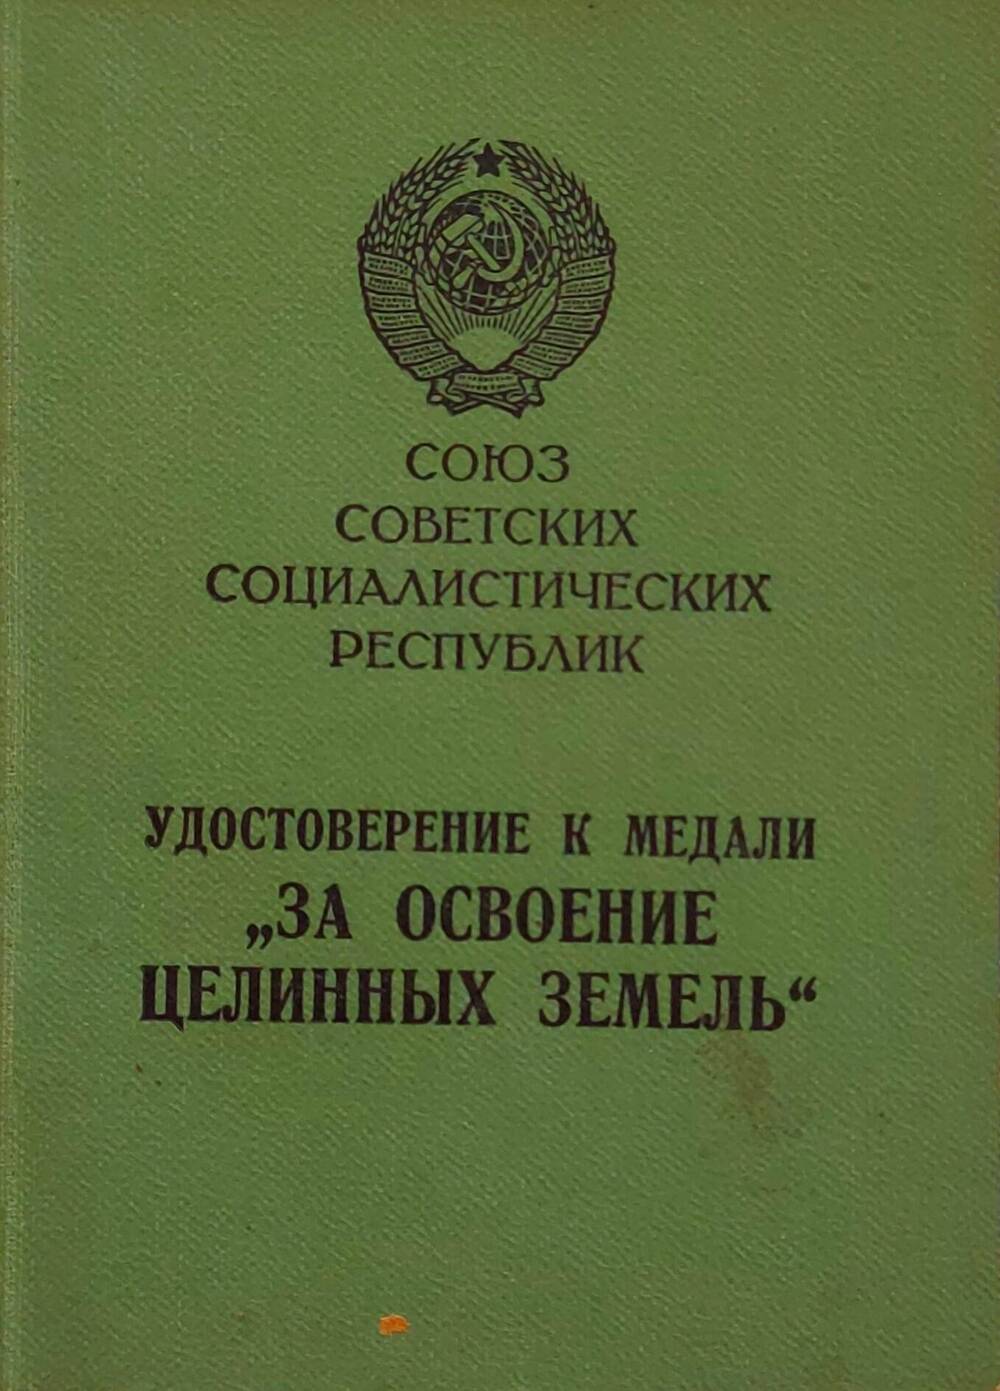 Удостоверение А № 190927 к медали За освоение целинных земель Старостиной Марии Николаевны.